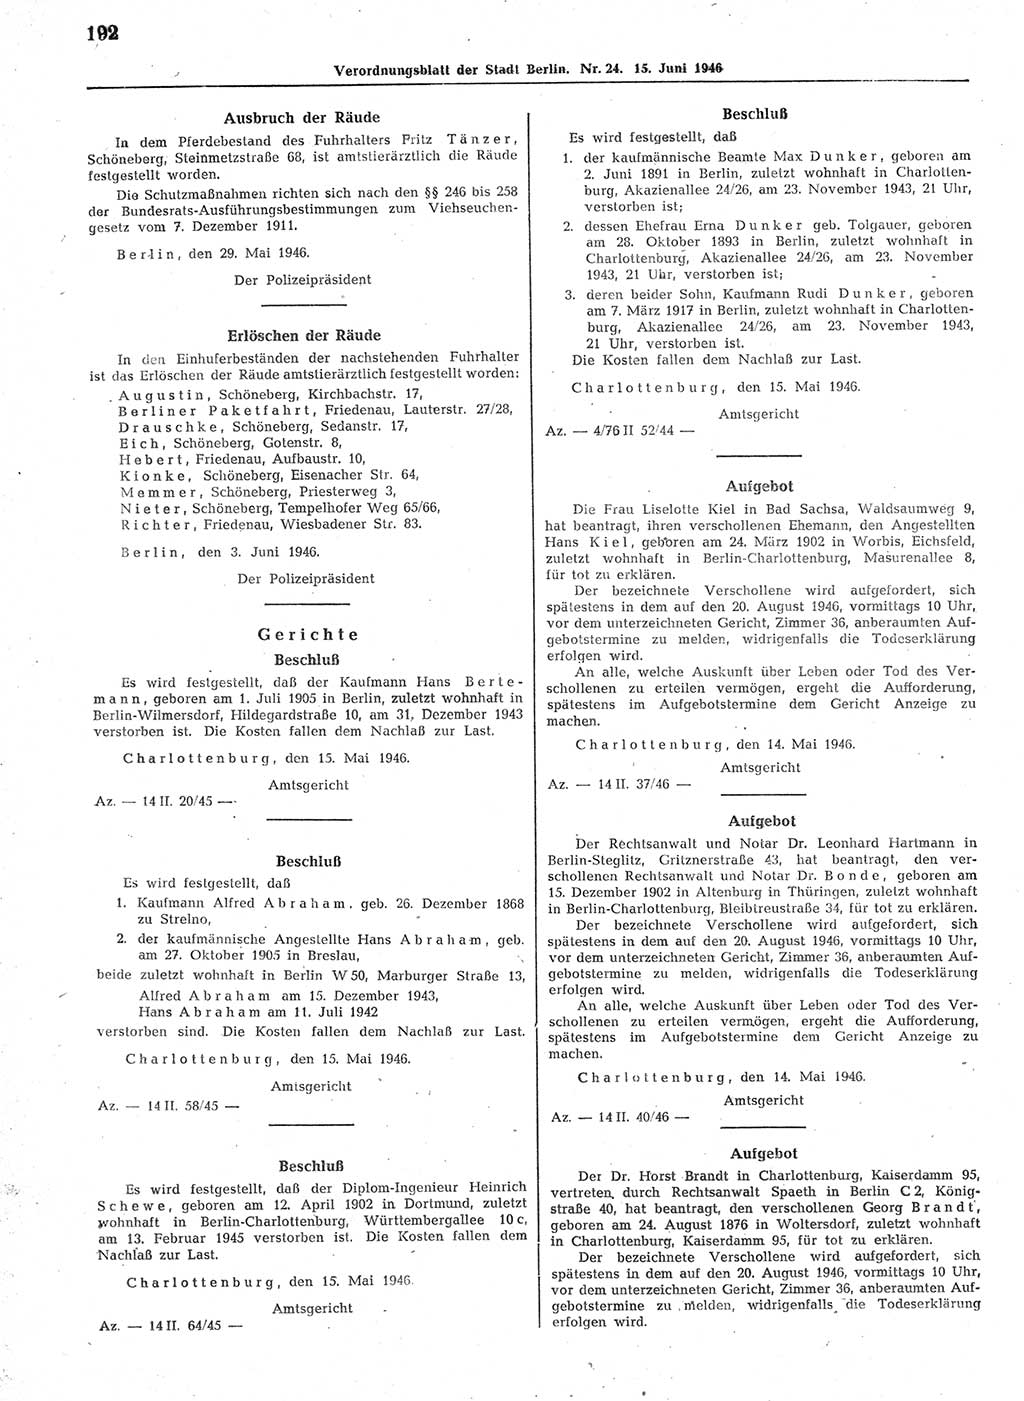 Verordnungsblatt (VOBl.) der Stadt Berlin, für Groß-Berlin 1946, Seite 192 (VOBl. Bln. 1946, S. 192)